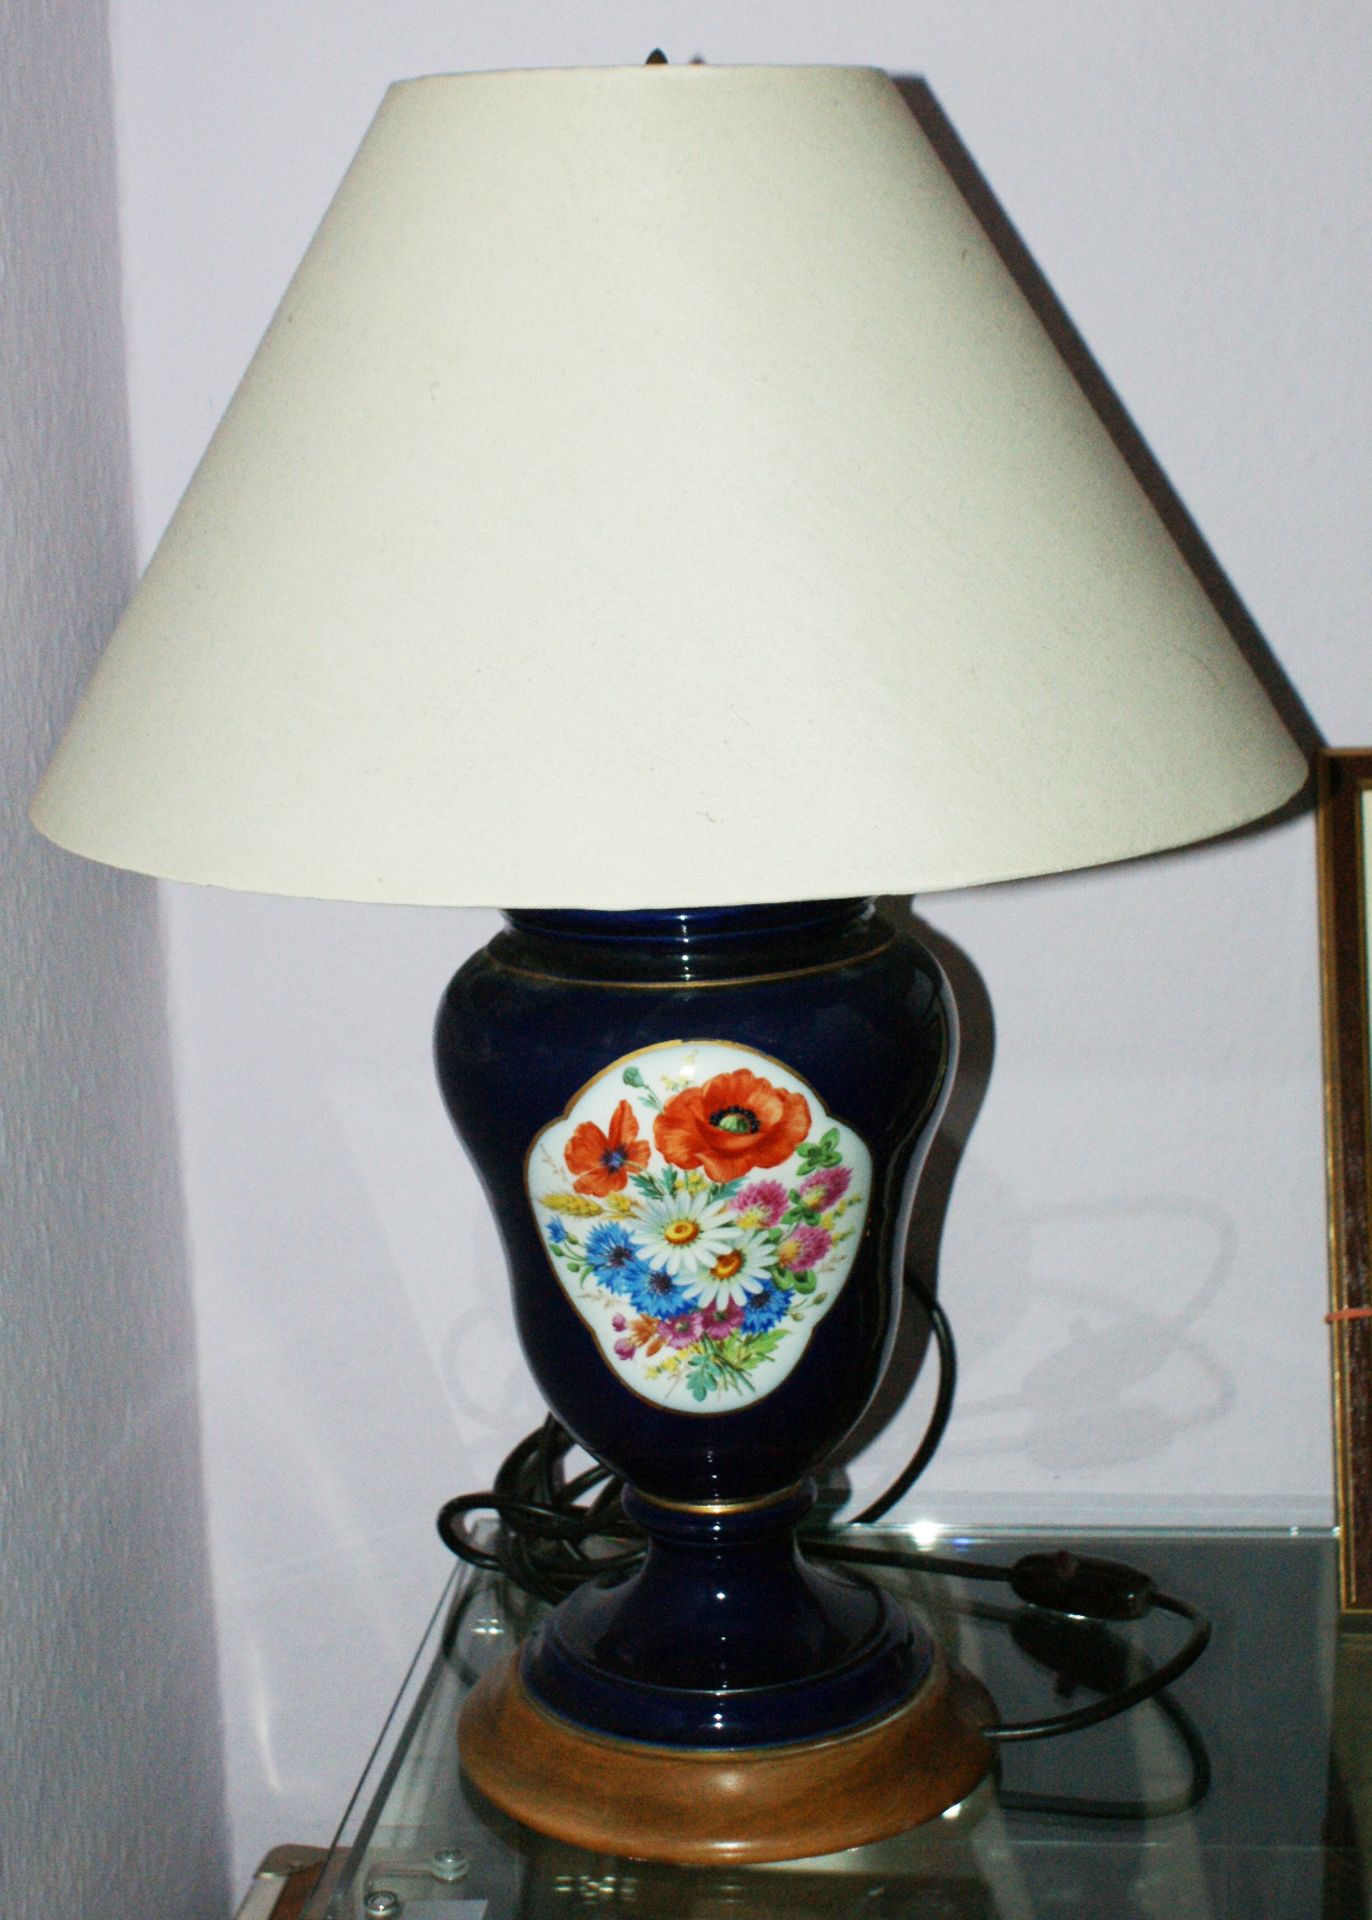 1 Porzellan-Lampe, kobaltblau, mit feiner Malerei. 1x Blumenbouquet, sowie 1 romantische Szene.